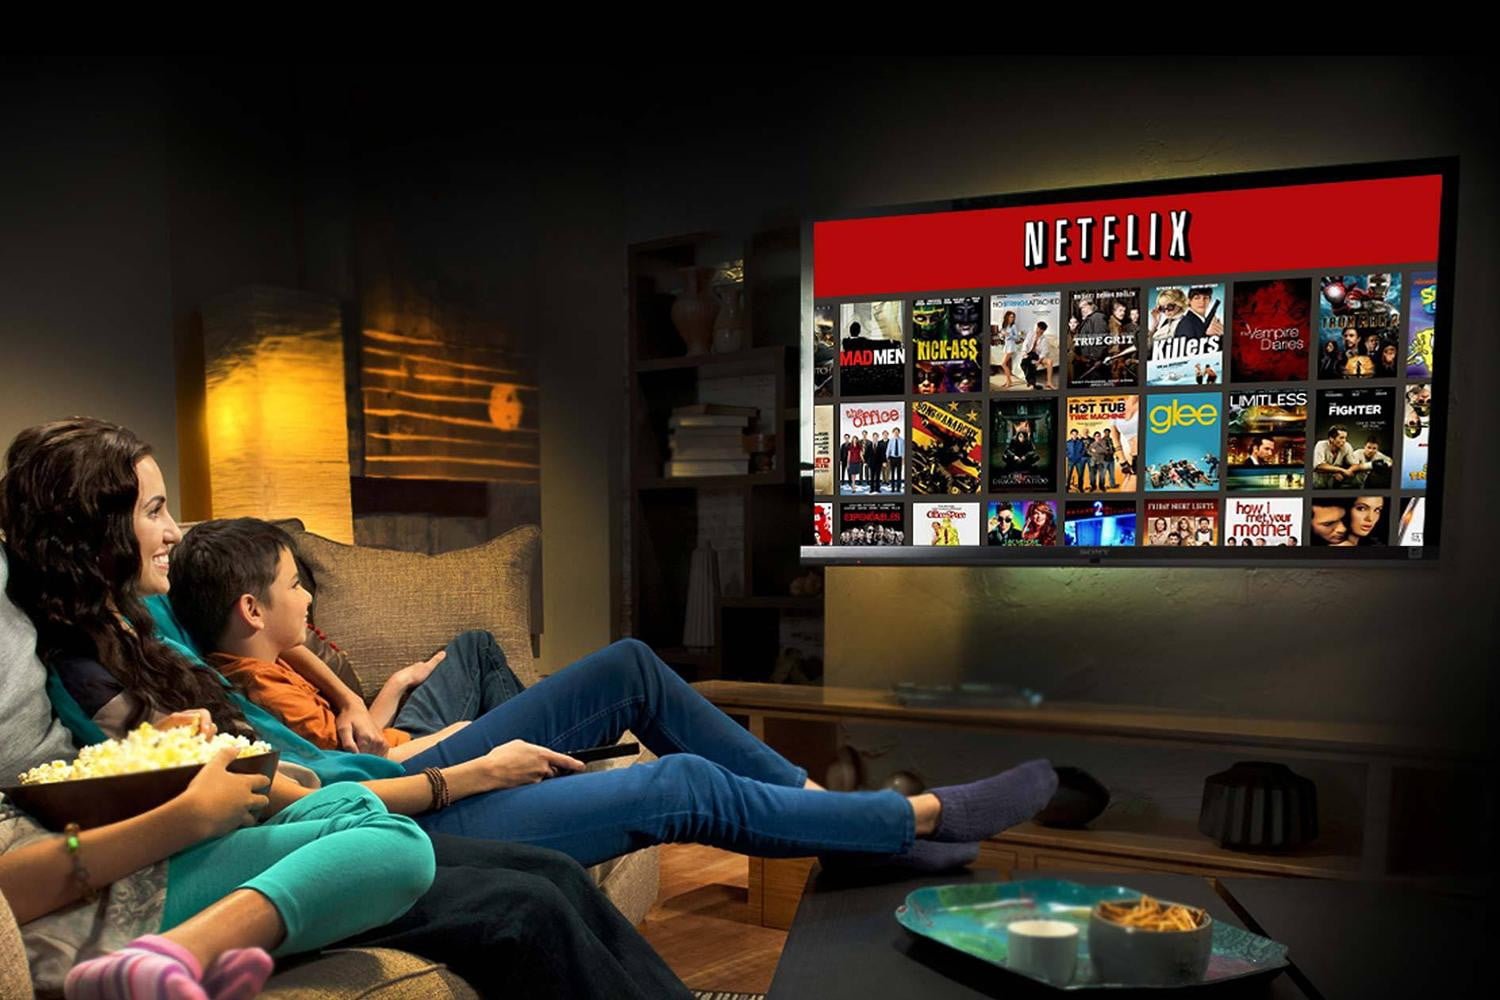 Netflix podaje gotowe ustawienia do telewizorów. Czy jest to zgodne z tym co widział reżyser w studio podczas post-produkcji filmu czy serialu?